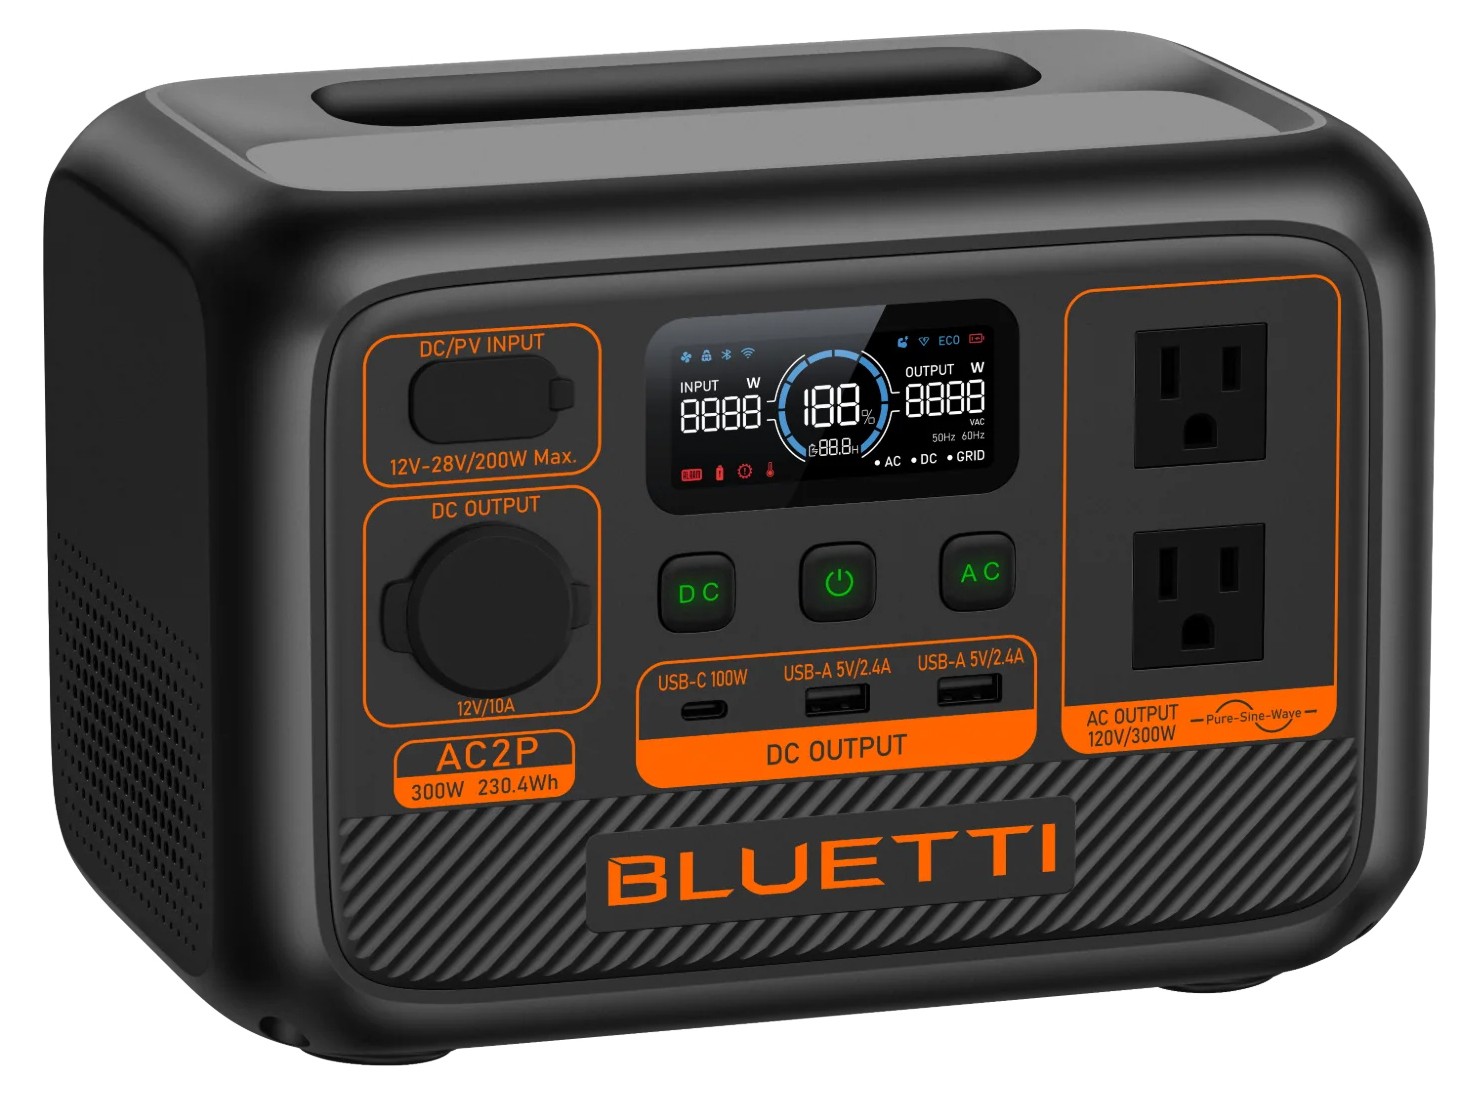 Портативная зарядная станция Bluetti AC2P отзывы - изображения 5